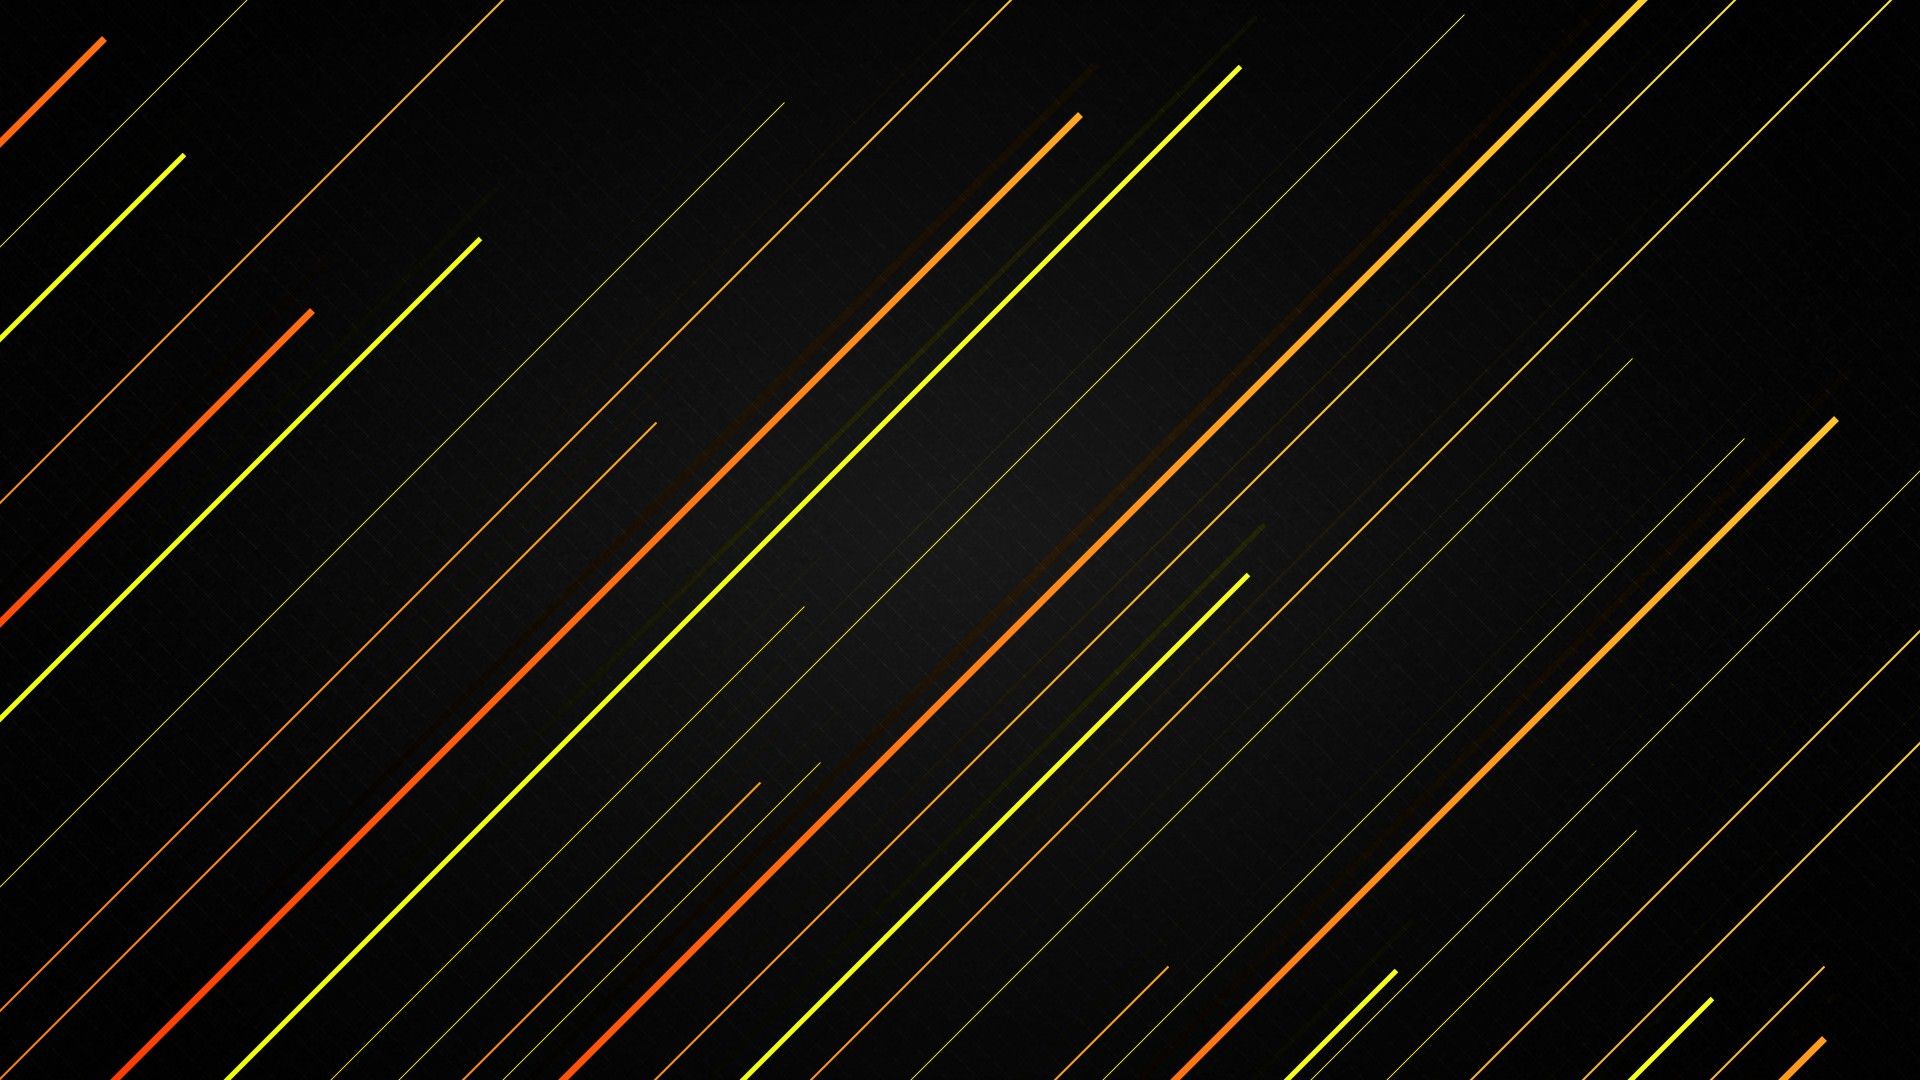 عکس جالب و زیبا از خط های اریب نارنجی و سبز 